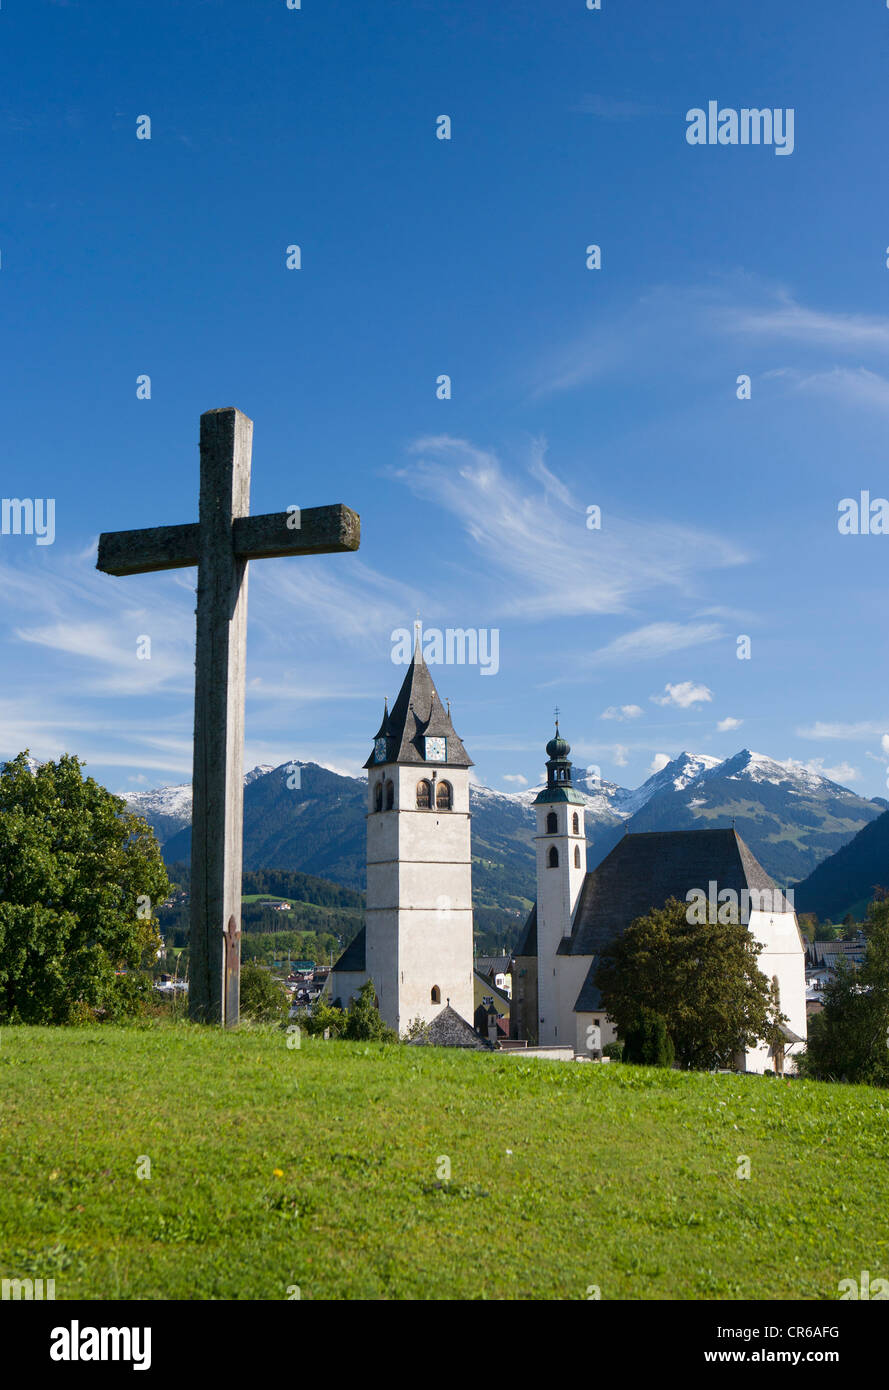 L'Autriche, le Tyrol,Kitzbuehel, vue de l'église paroissiale Banque D'Images